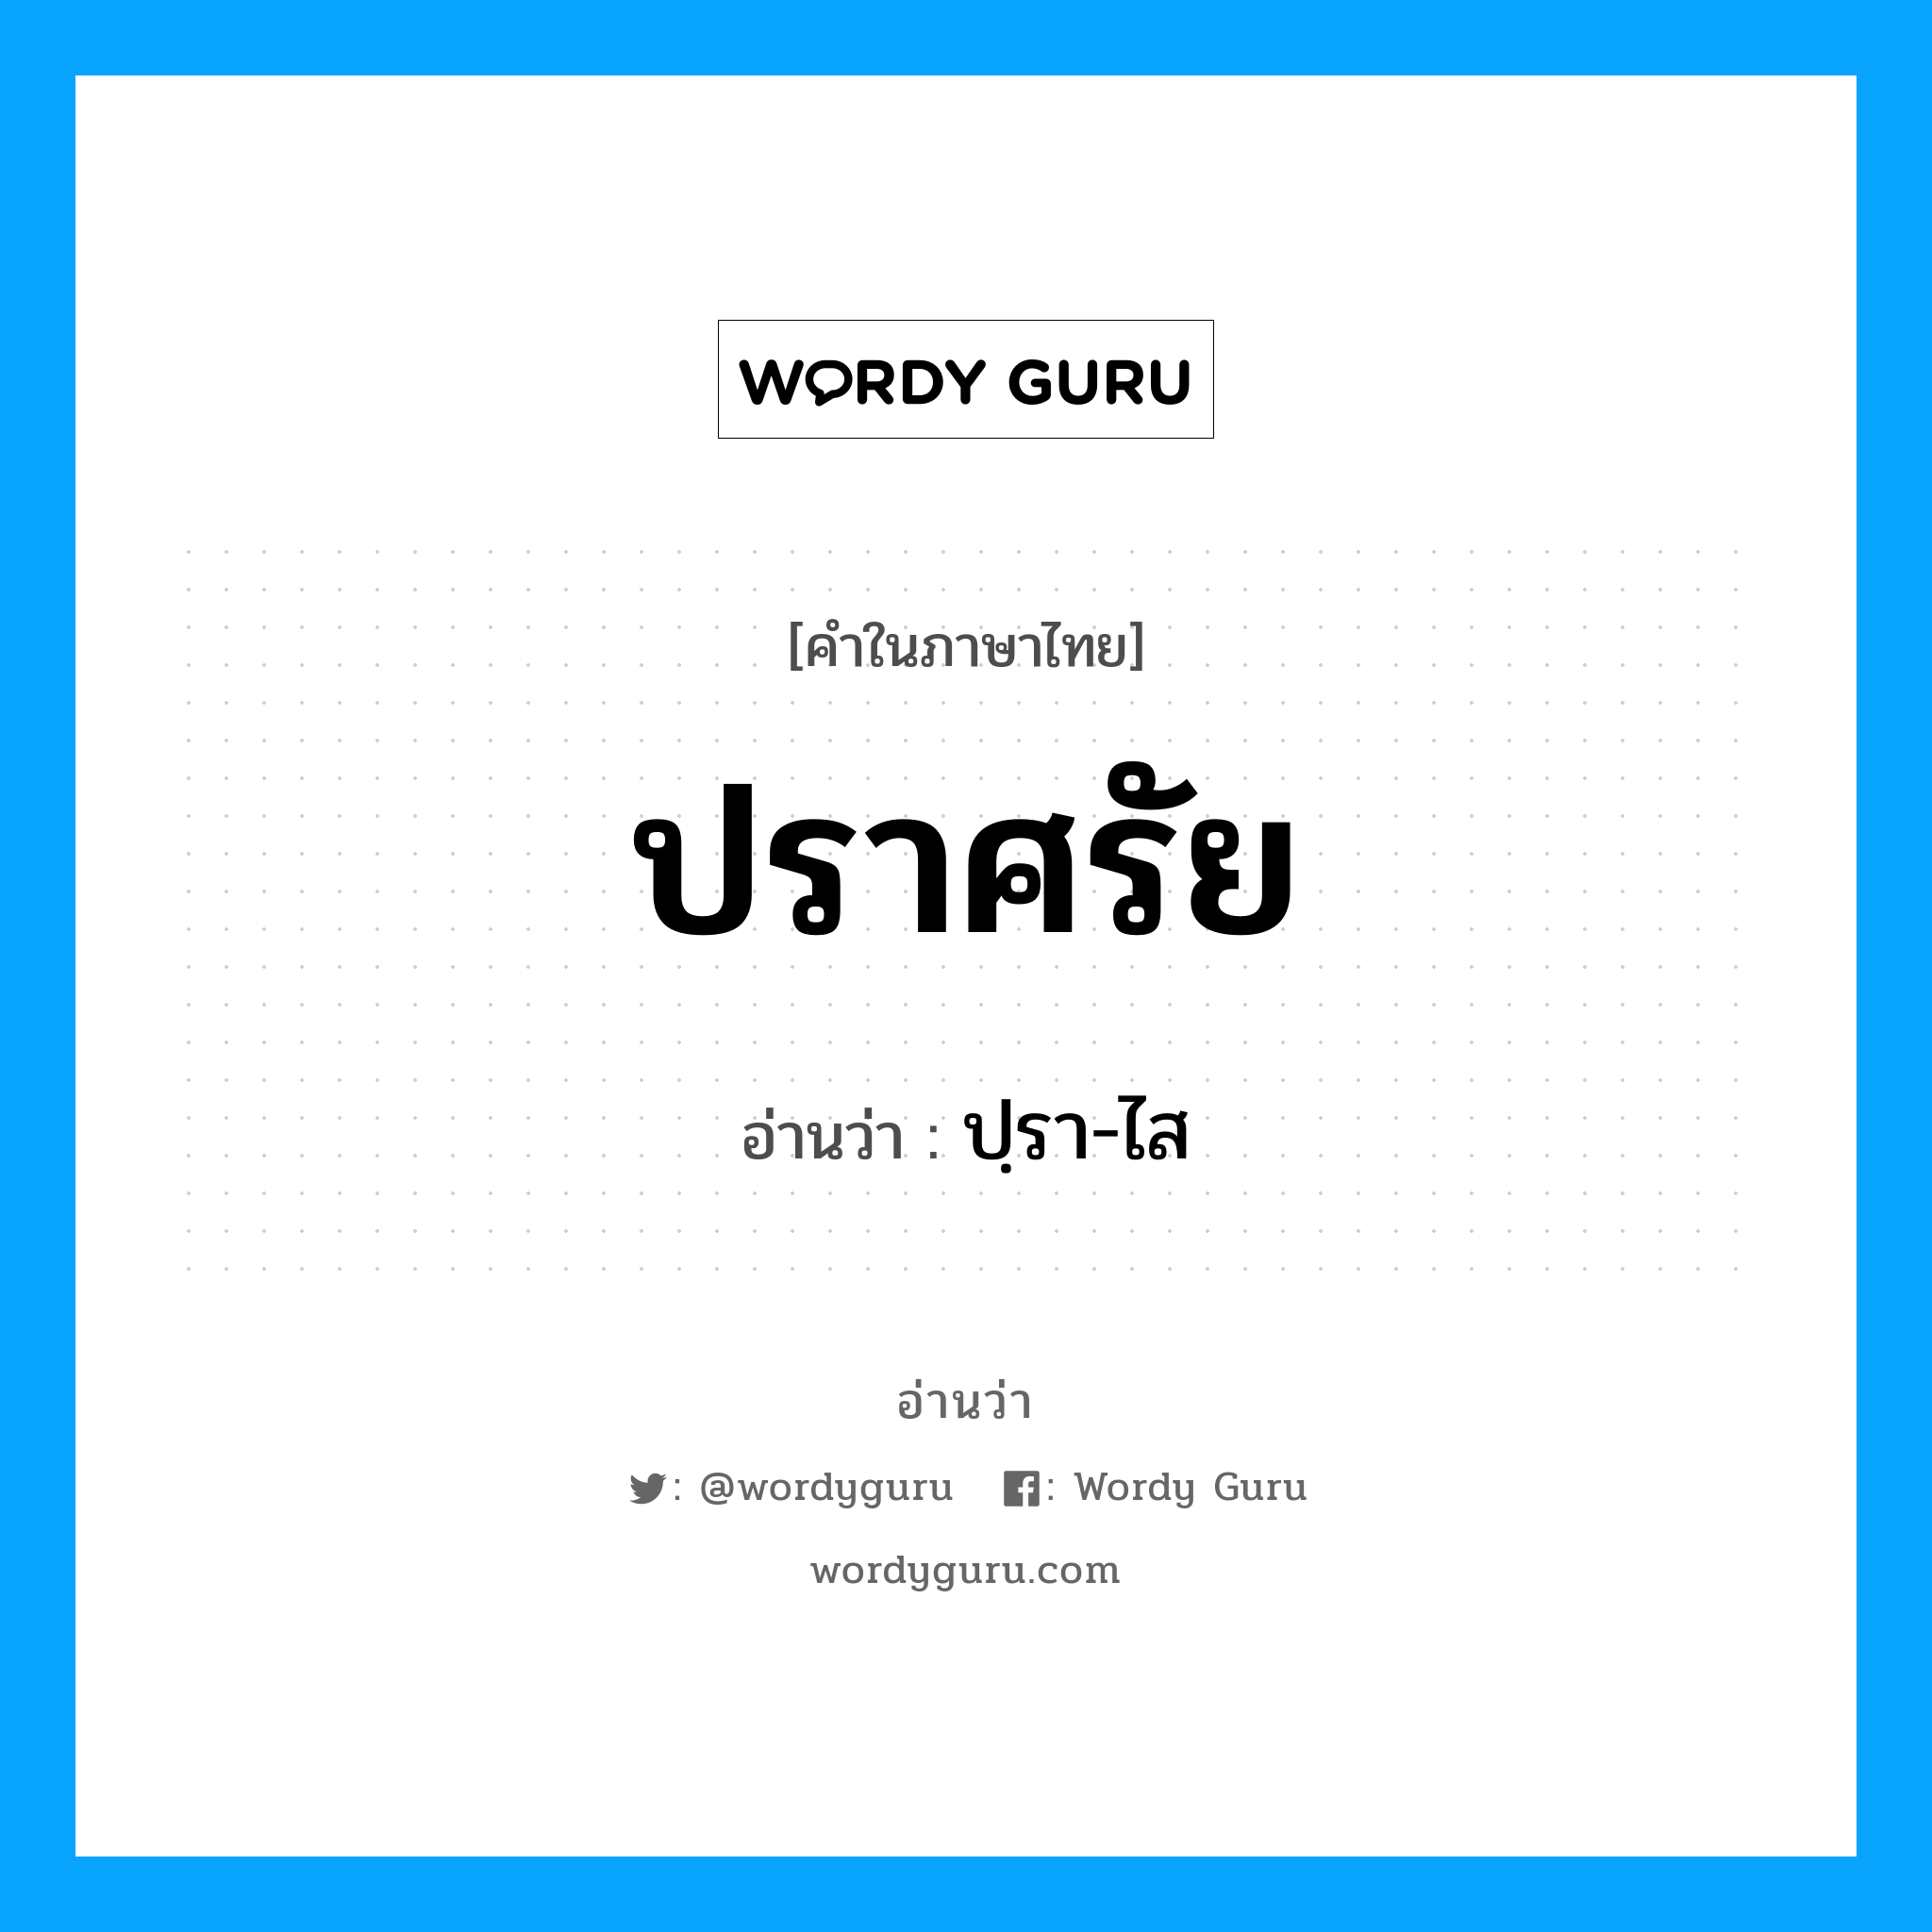 ปฺรา-ไส เป็นคำอ่านของคำไหน?, คำในภาษาไทย ปฺรา-ไส อ่านว่า ปราศรัย